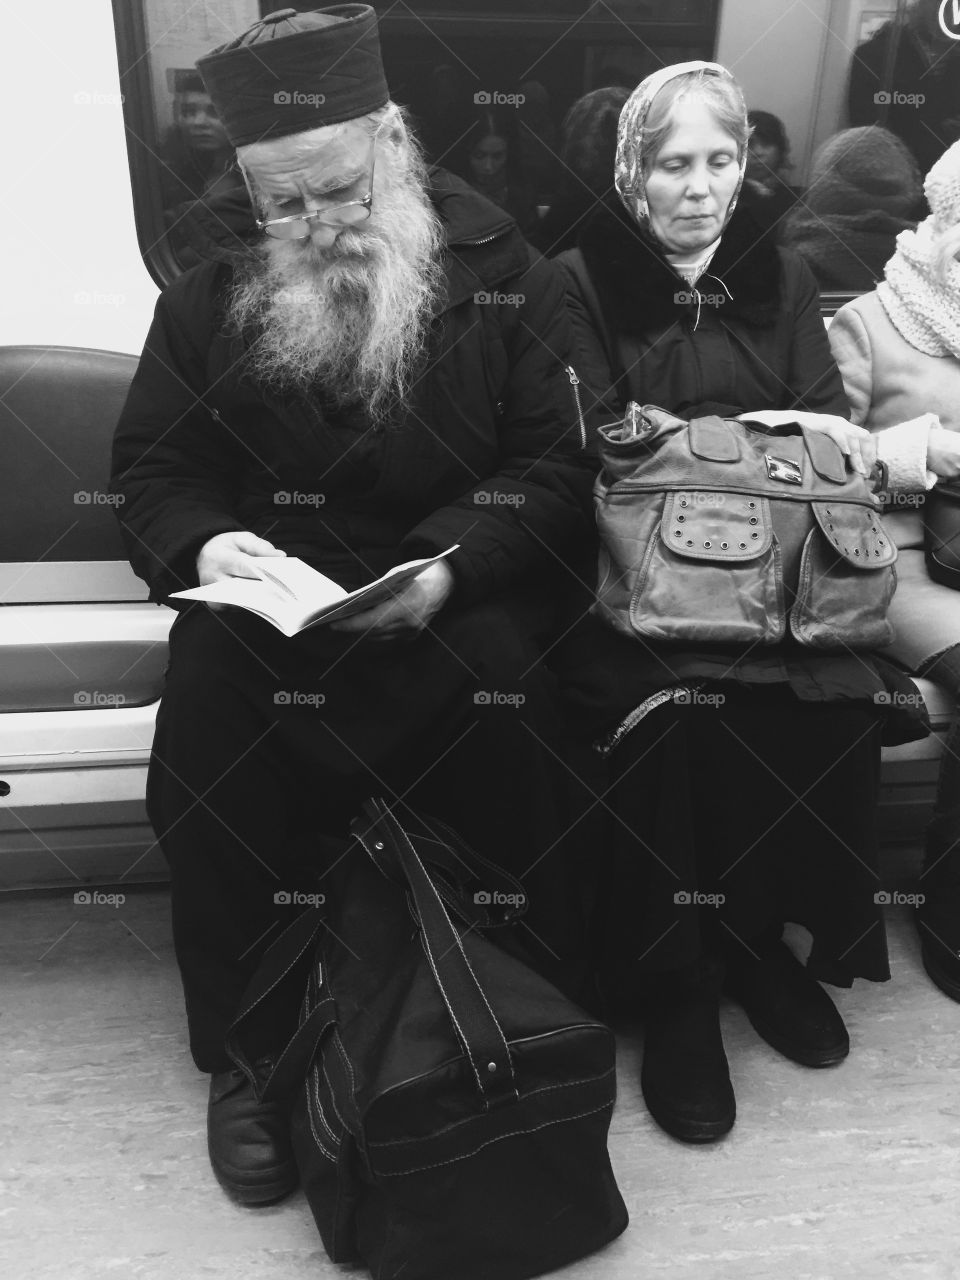 Moscow metro man